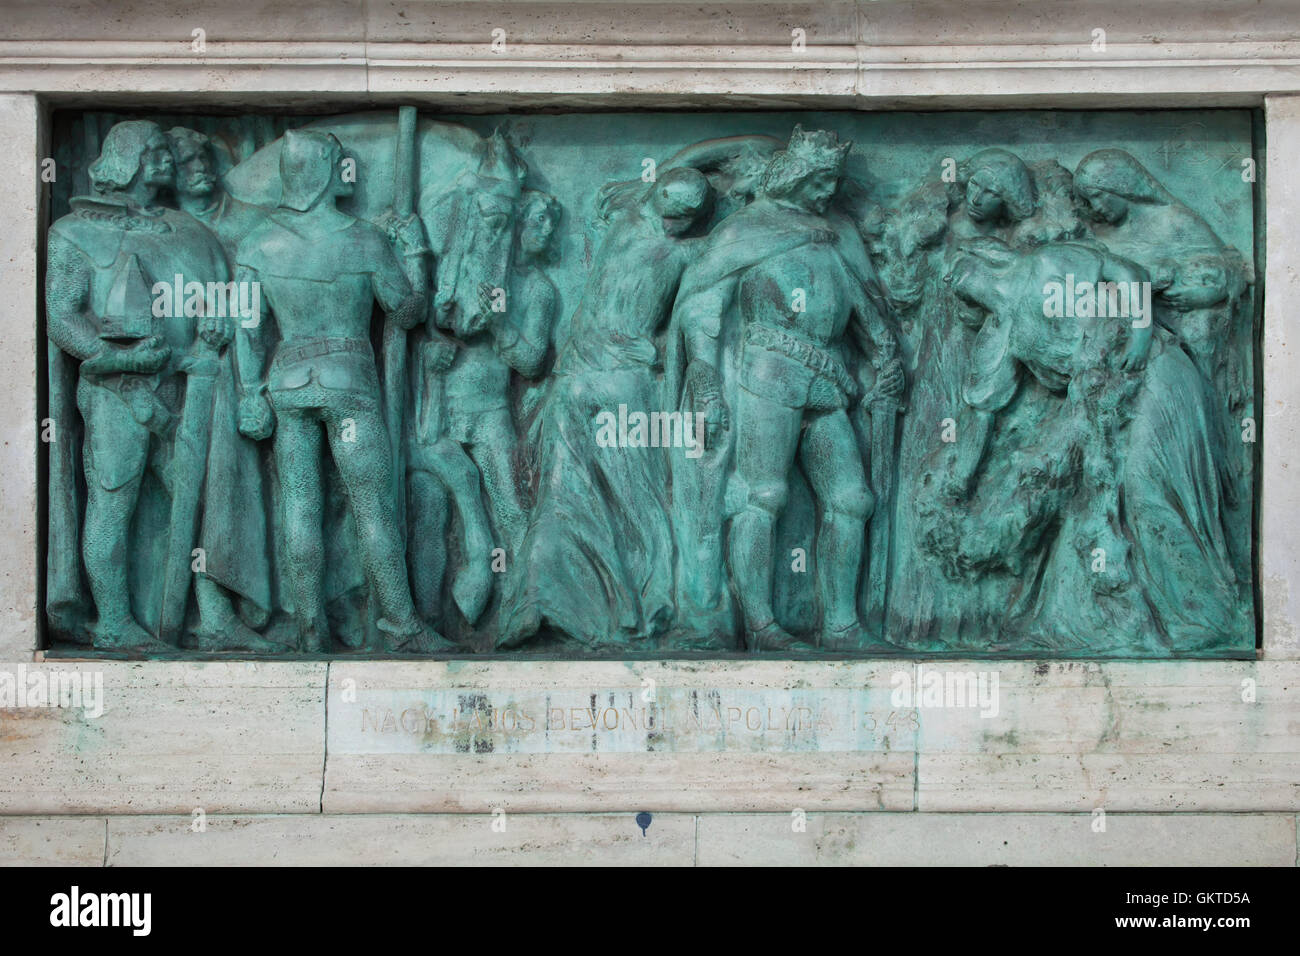 König Louis der große nimmt Naples begrüßt von Königin Johanna von Neapel im Jahre 1348. Bronzerelief von ungarischen Bildhauer György Zala auf dem Millennium-Denkmal in der Heldenplatz in Budapest, Ungarn. Stockfoto